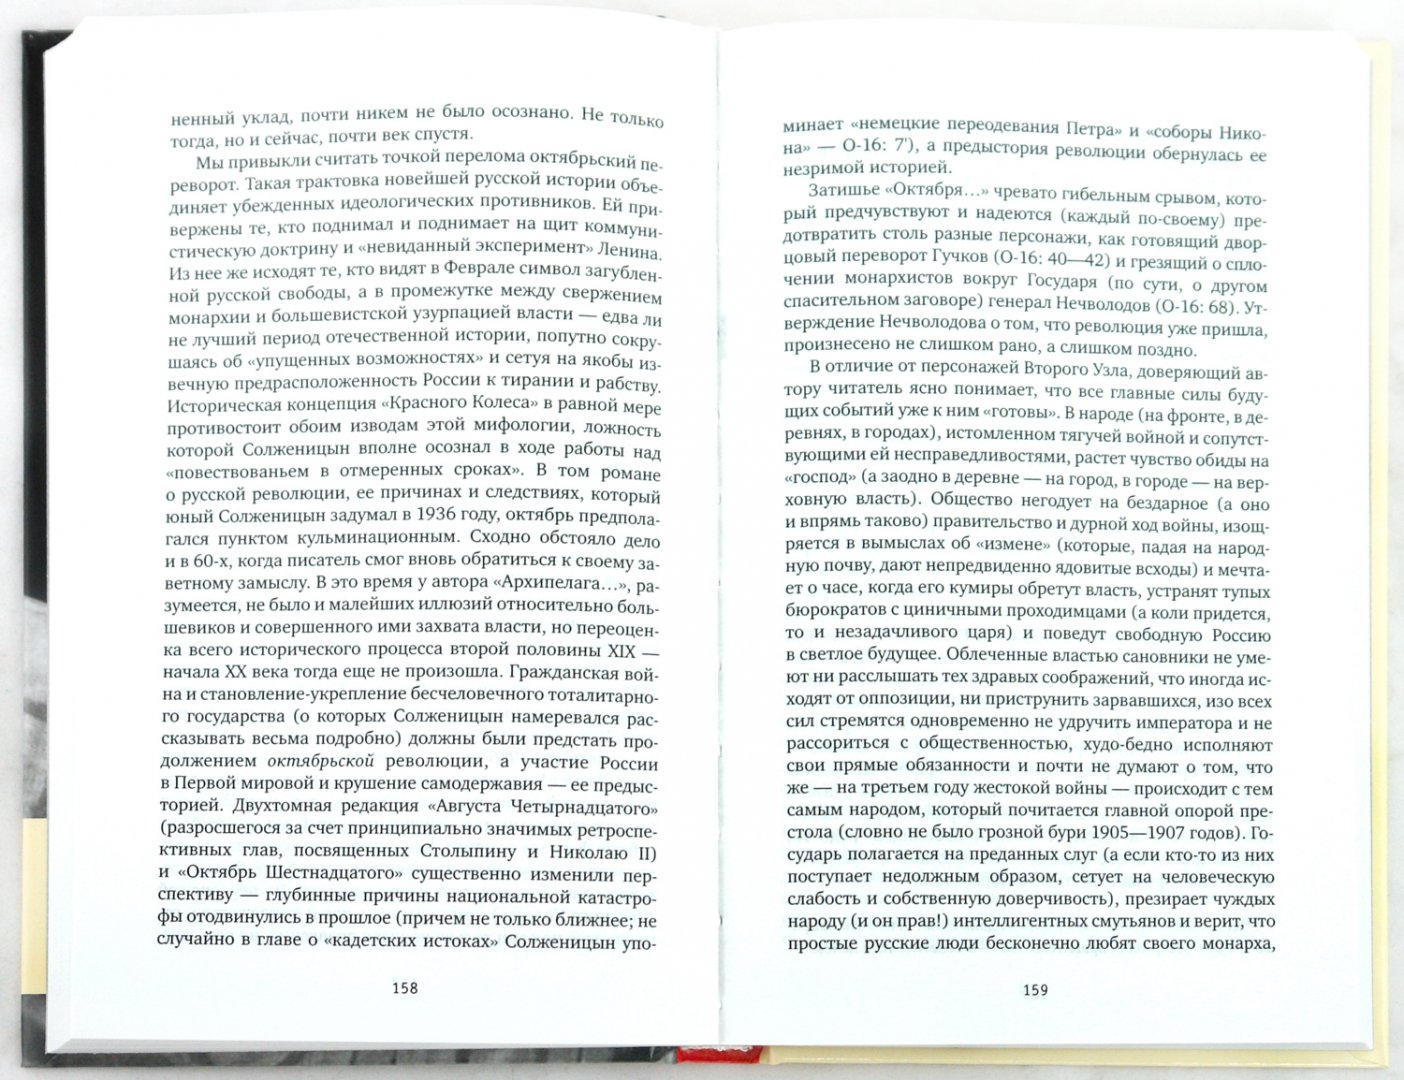 Иллюстрация 1 из 7 для "Красное колесо" А. Солженицына: Опыт прочтения - Андрей Немзер | Лабиринт - книги. Источник: Лабиринт